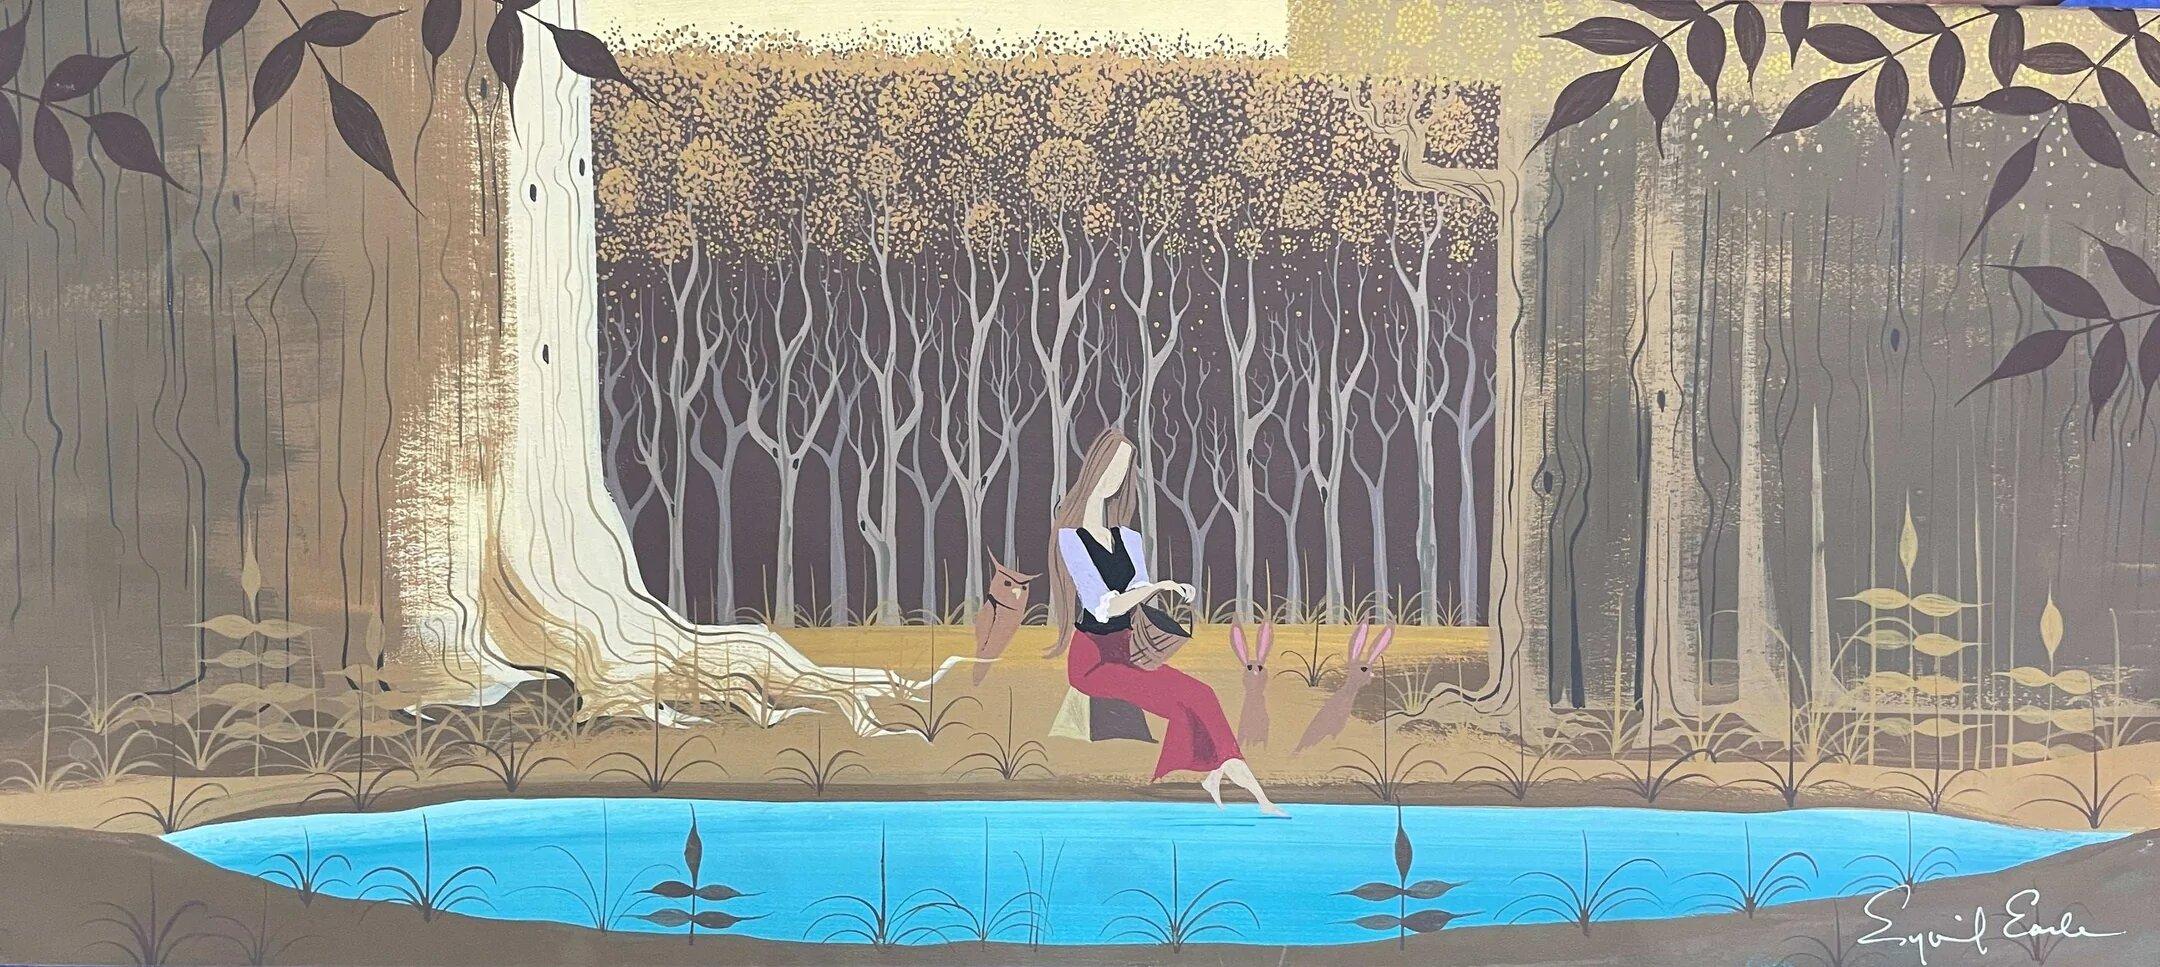 Sleeping Beauty, Original-konzeptionelles Gemälde: Briar Rose (Pop-Art), Art, von Eyvind Earle